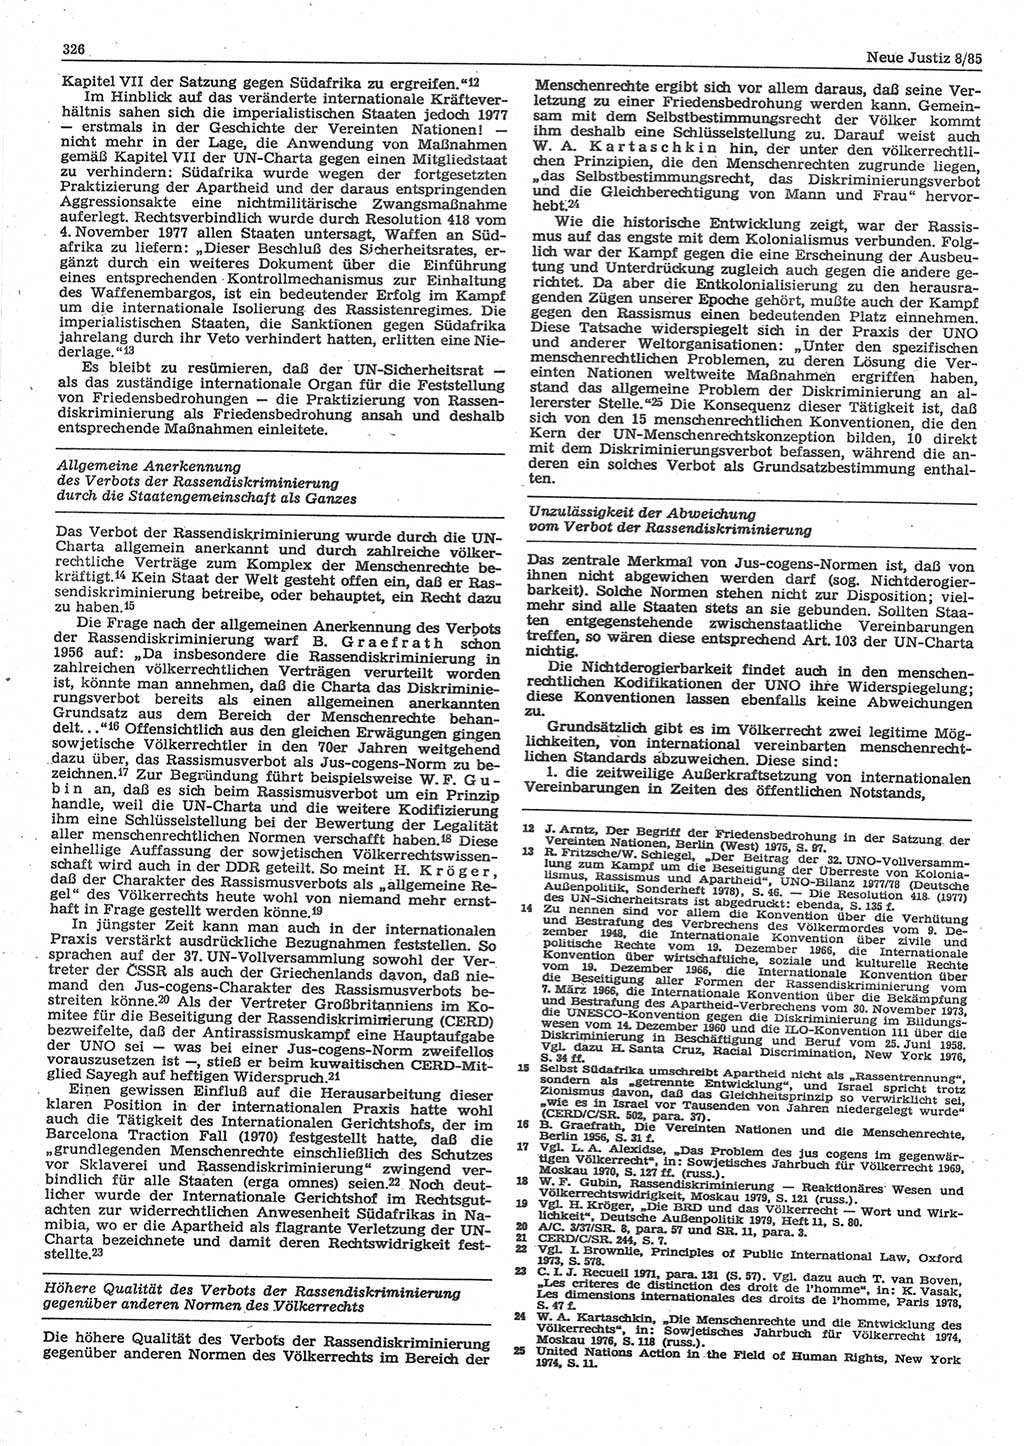 Neue Justiz (NJ), Zeitschrift für sozialistisches Recht und Gesetzlichkeit [Deutsche Demokratische Republik (DDR)], 39. Jahrgang 1985, Seite 326 (NJ DDR 1985, S. 326)